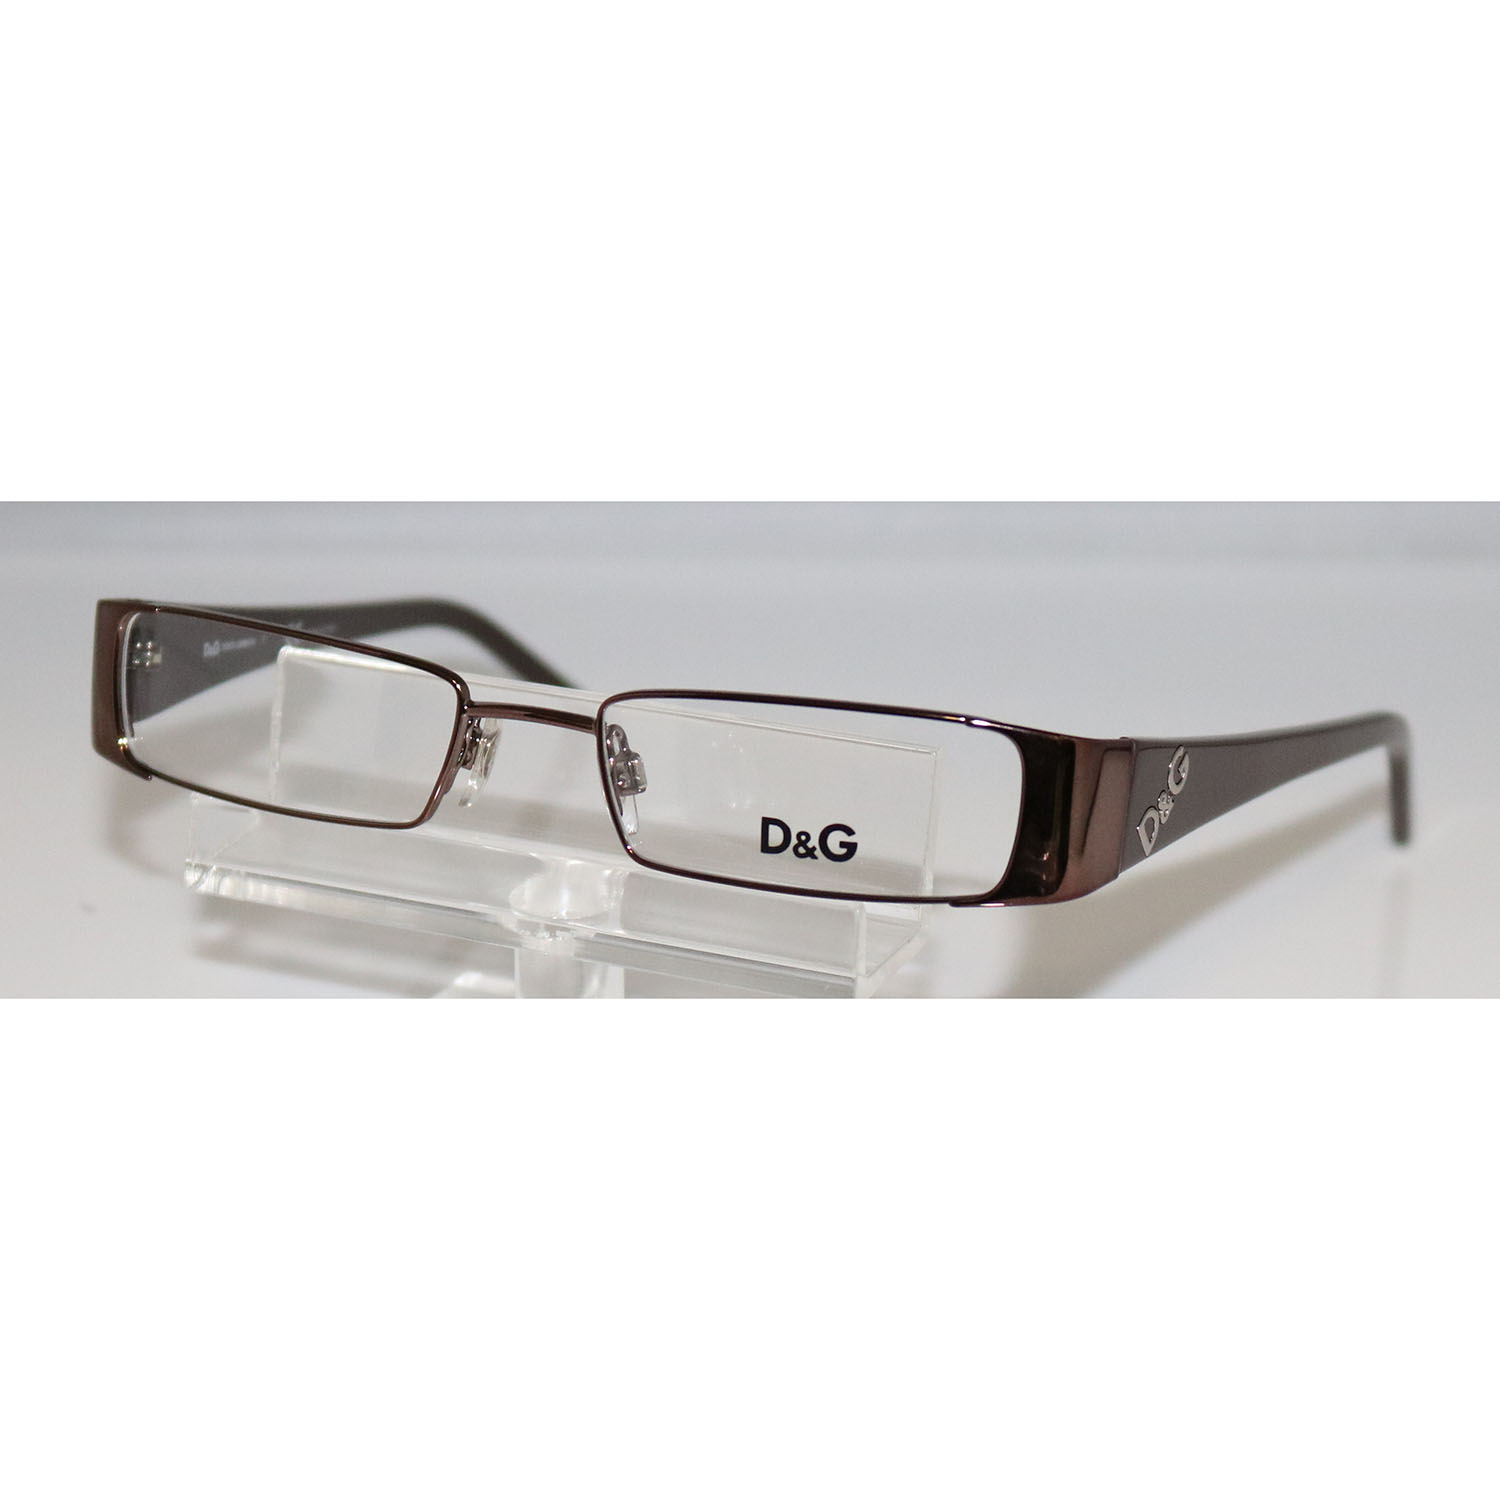 d&g reading glasses